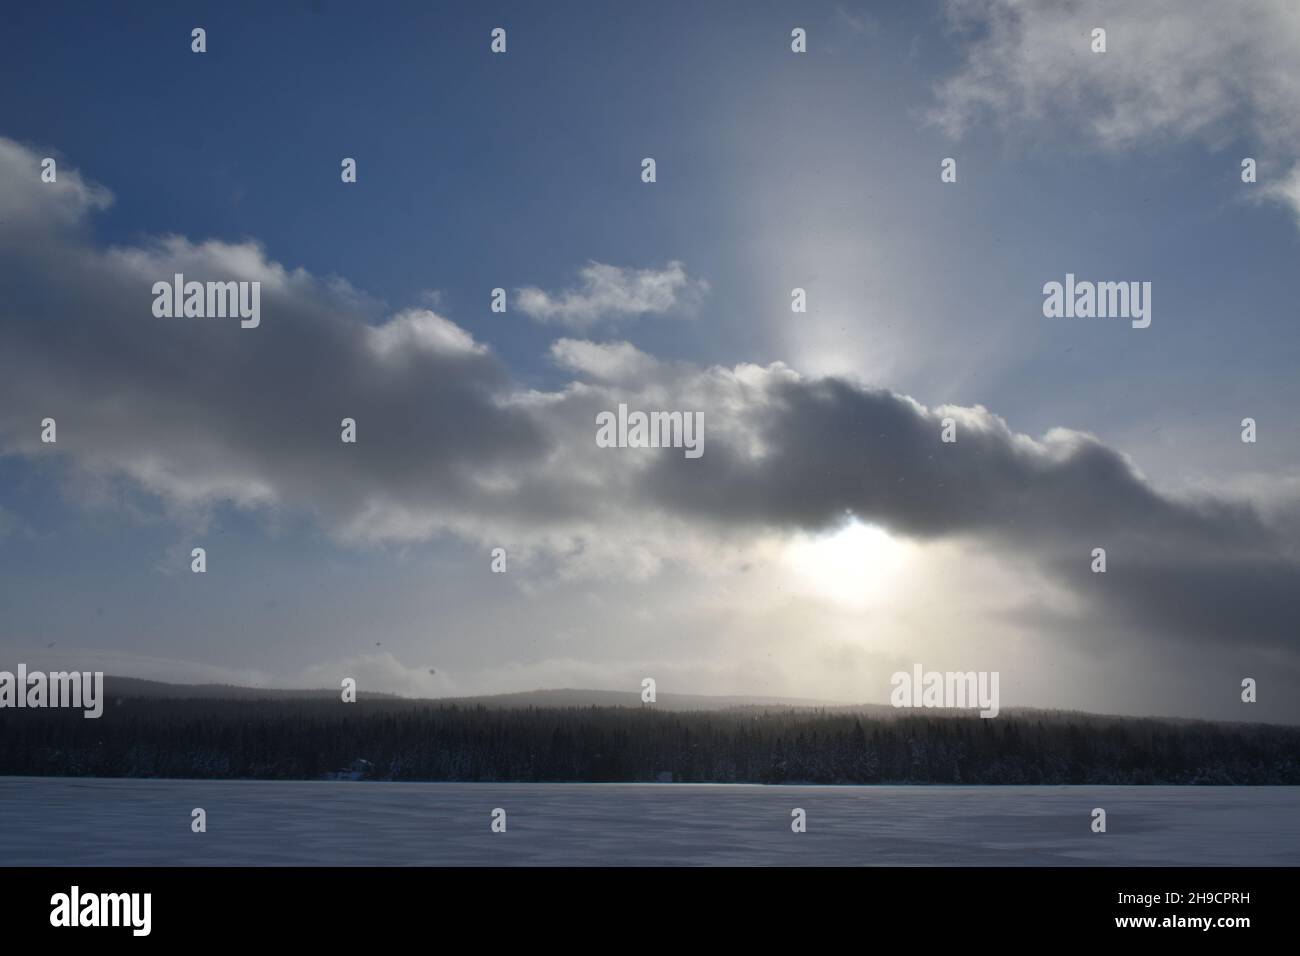 The lake in winter, Sainte-Apolline, Québec, Canada Stock Photo